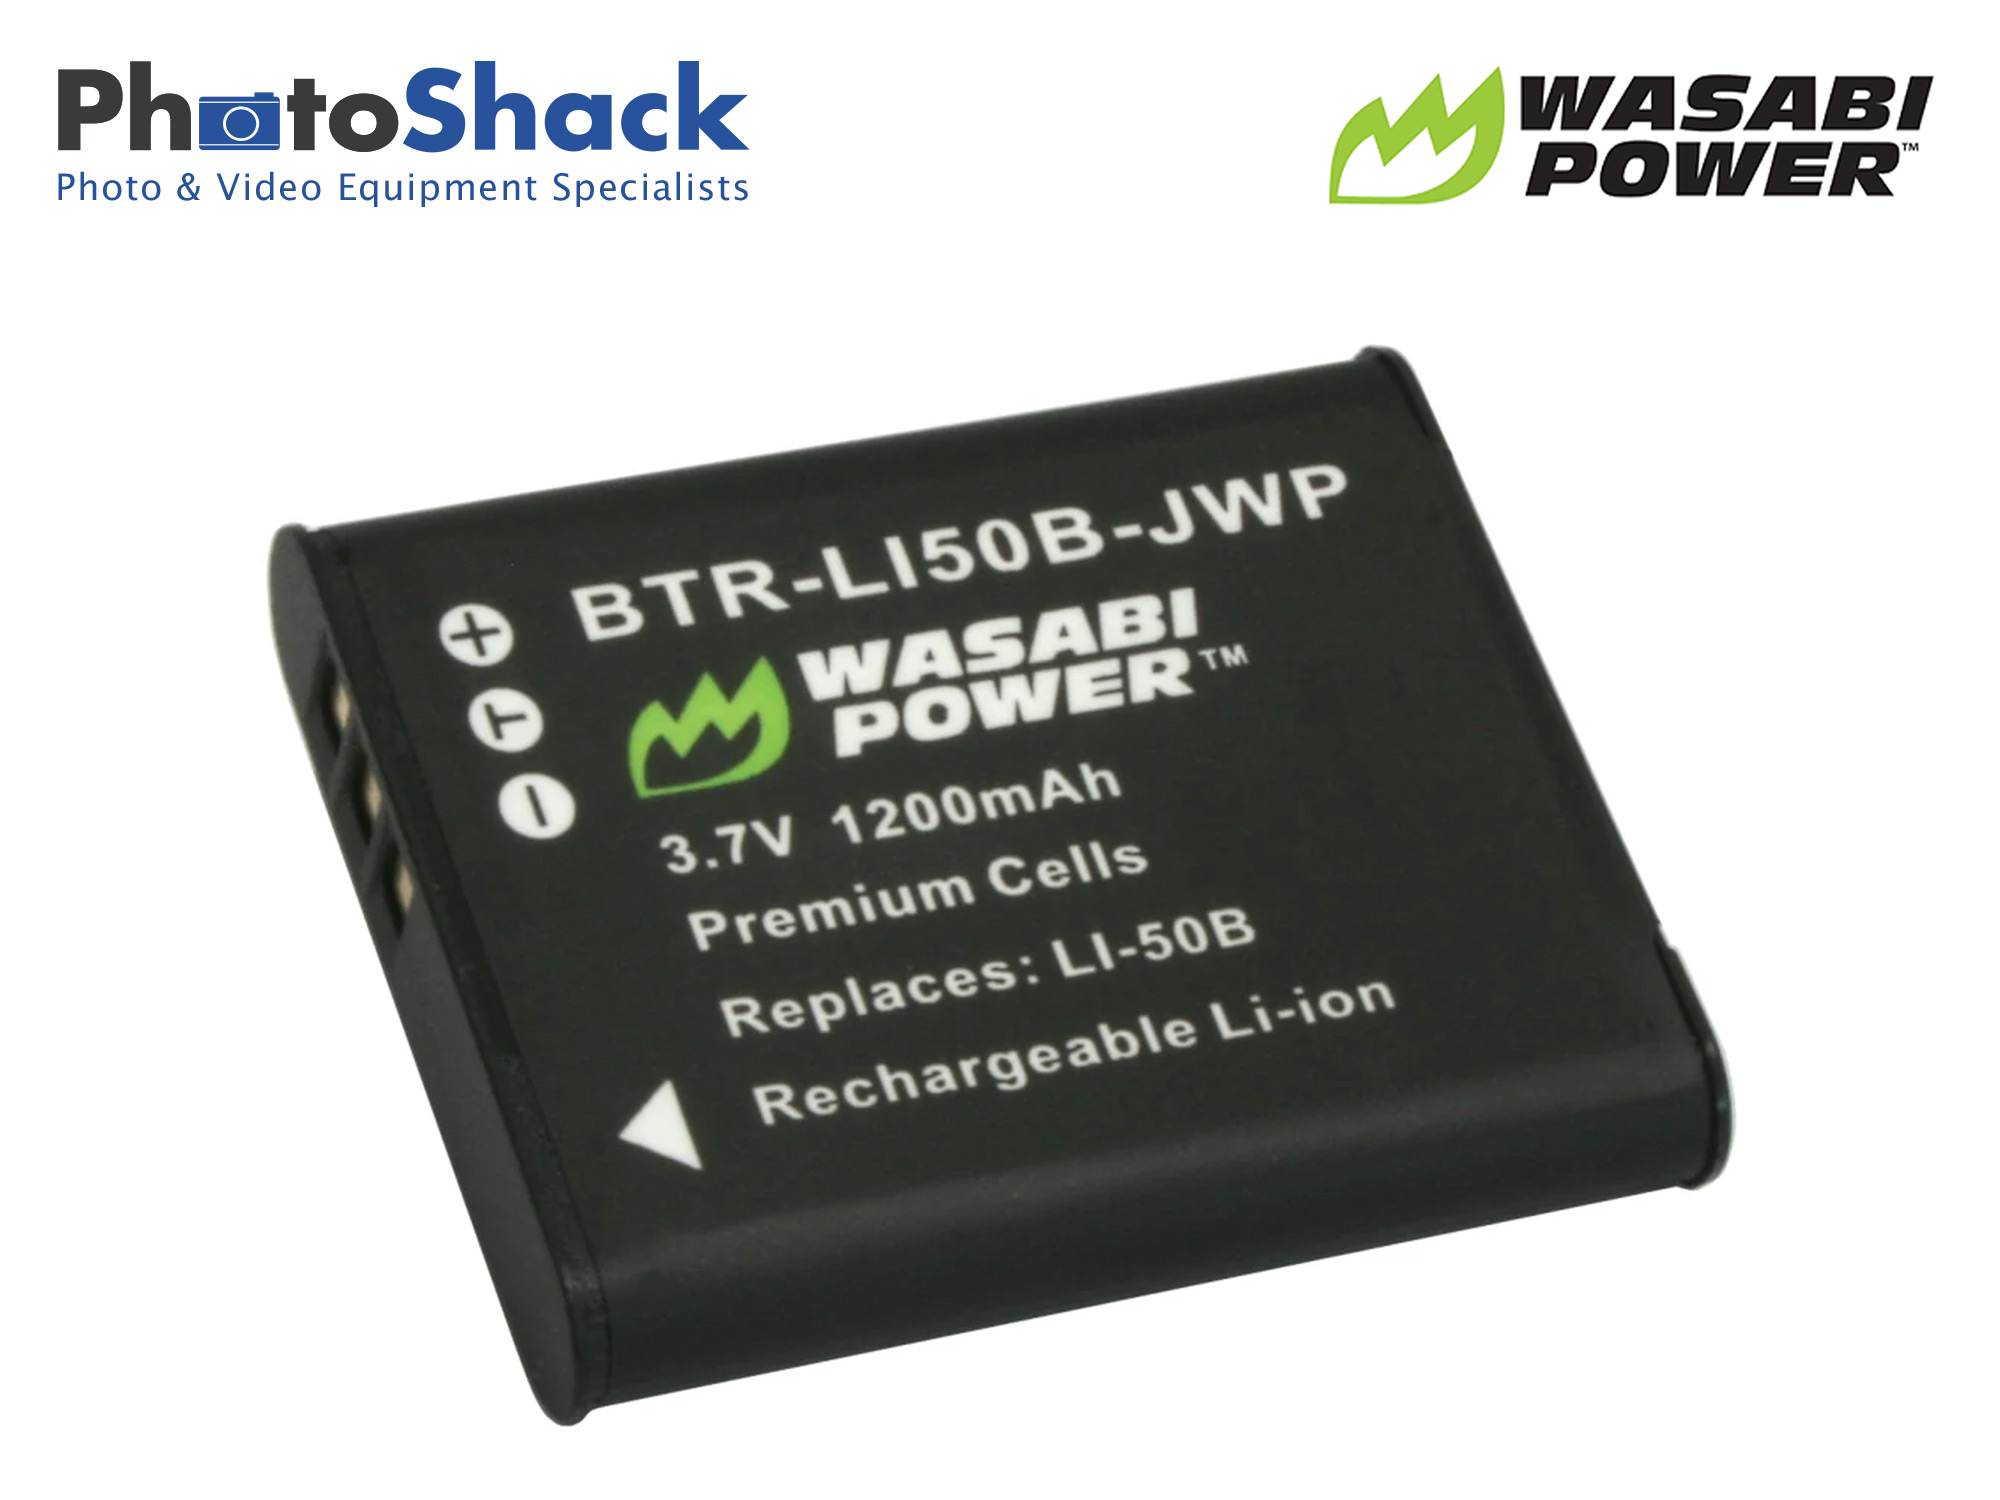 LI-50B battery for Olympus - Wasabi Power